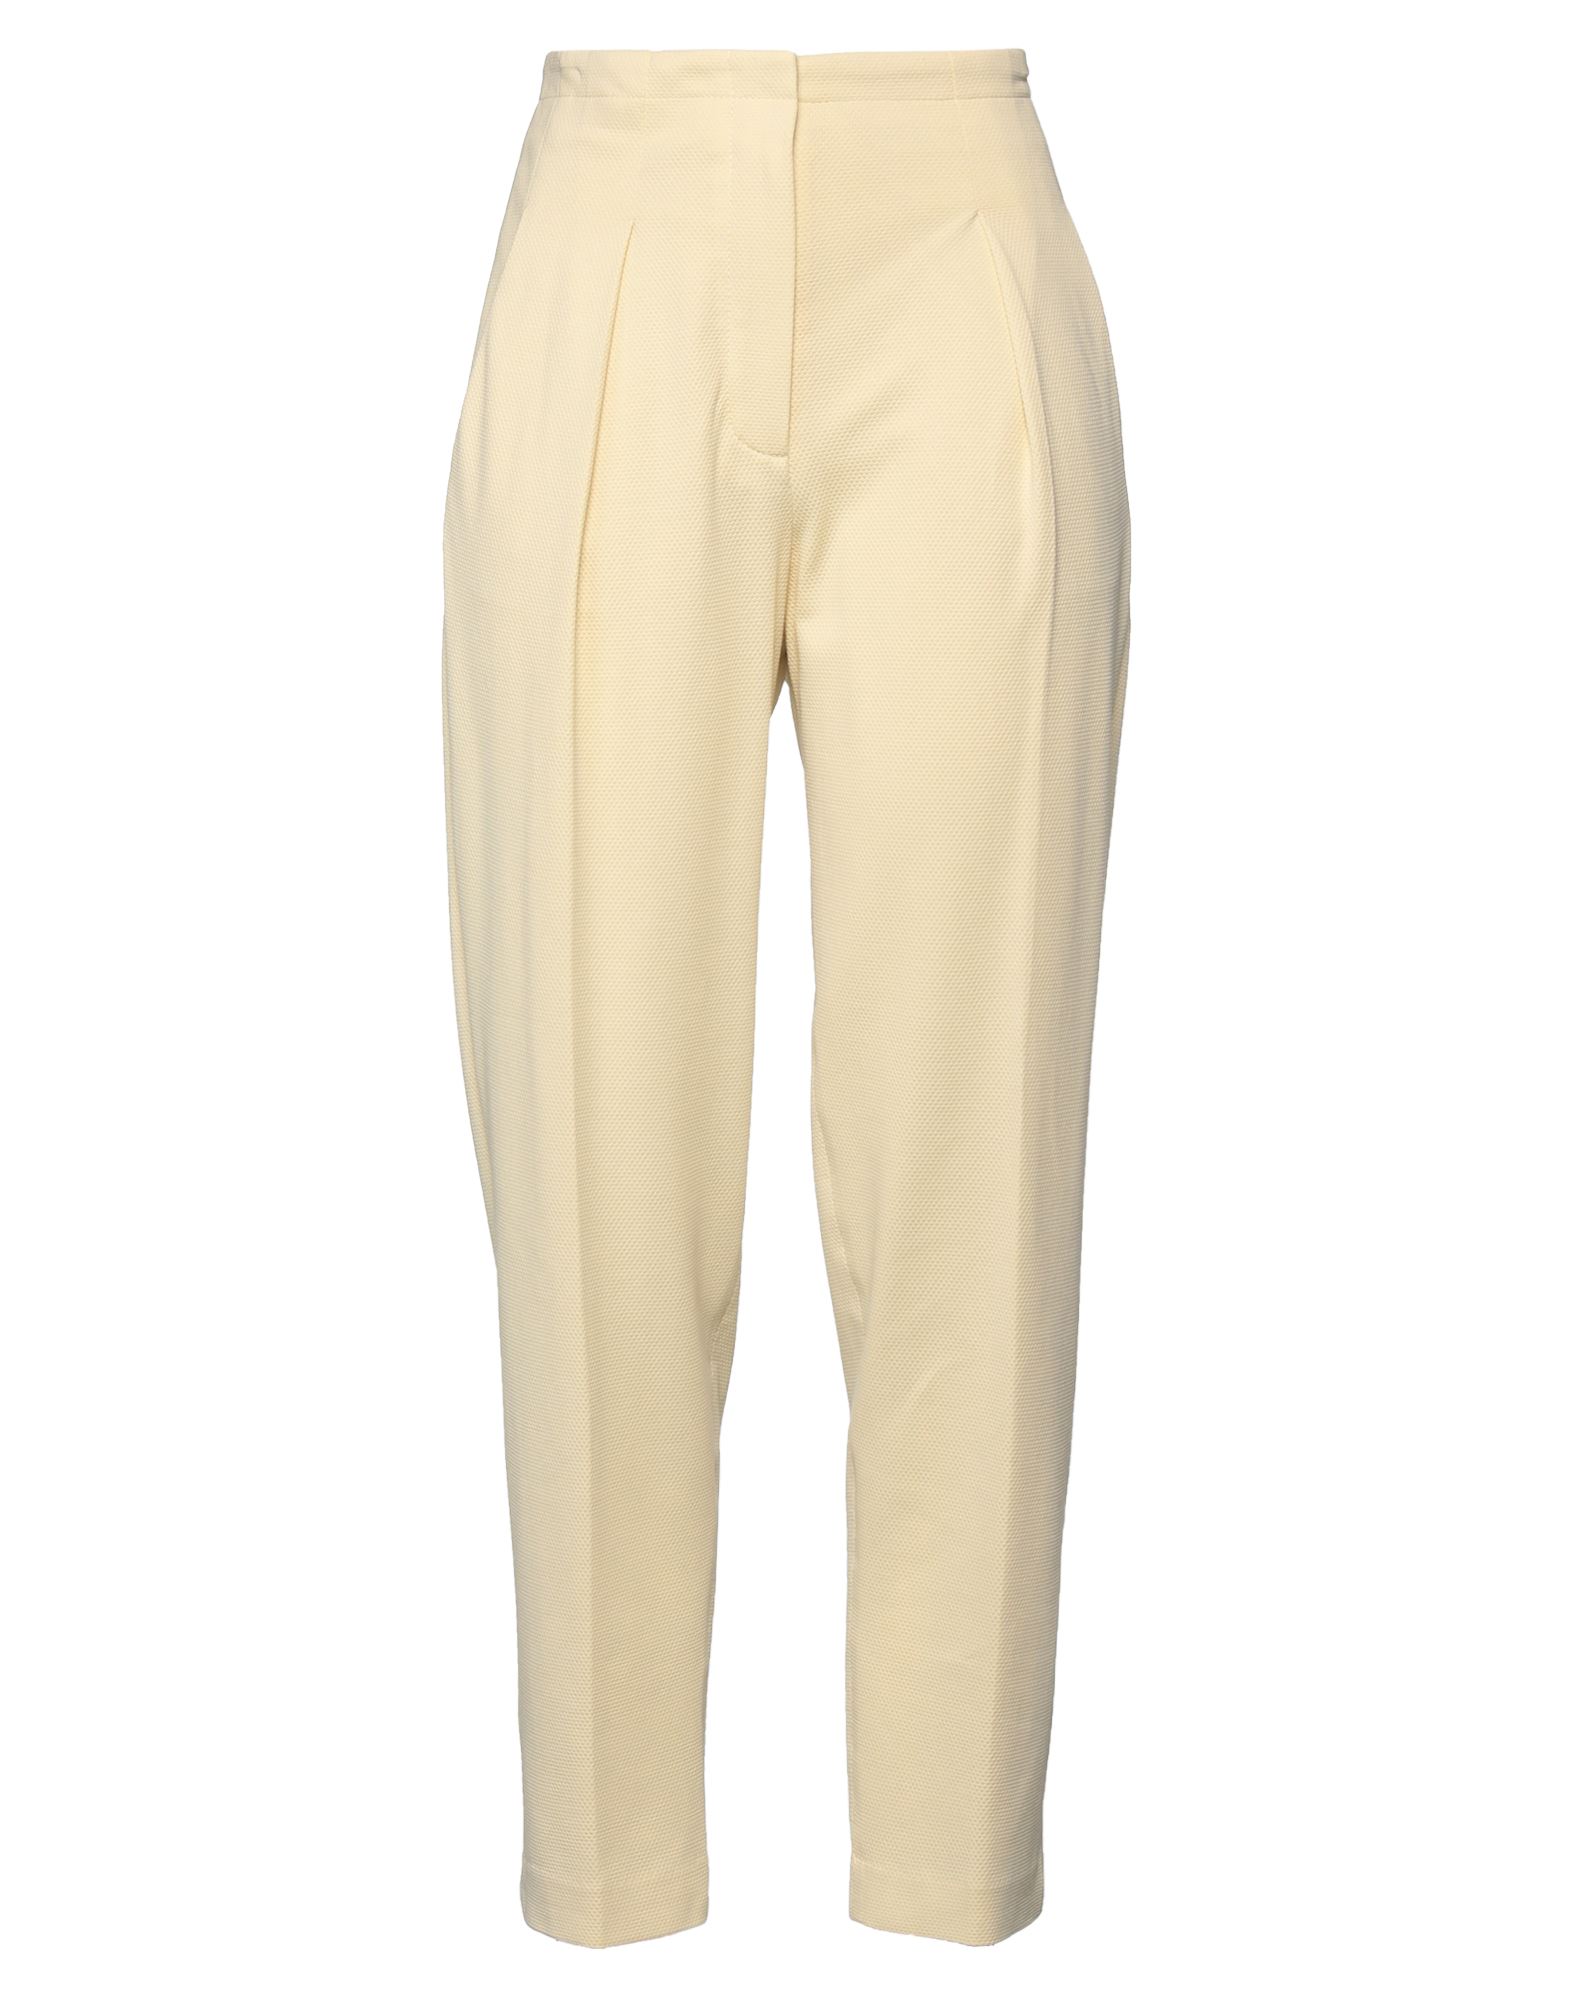 Shop Circolo 1901 Woman Pants Light Yellow Size 8 Cotton, Elastane